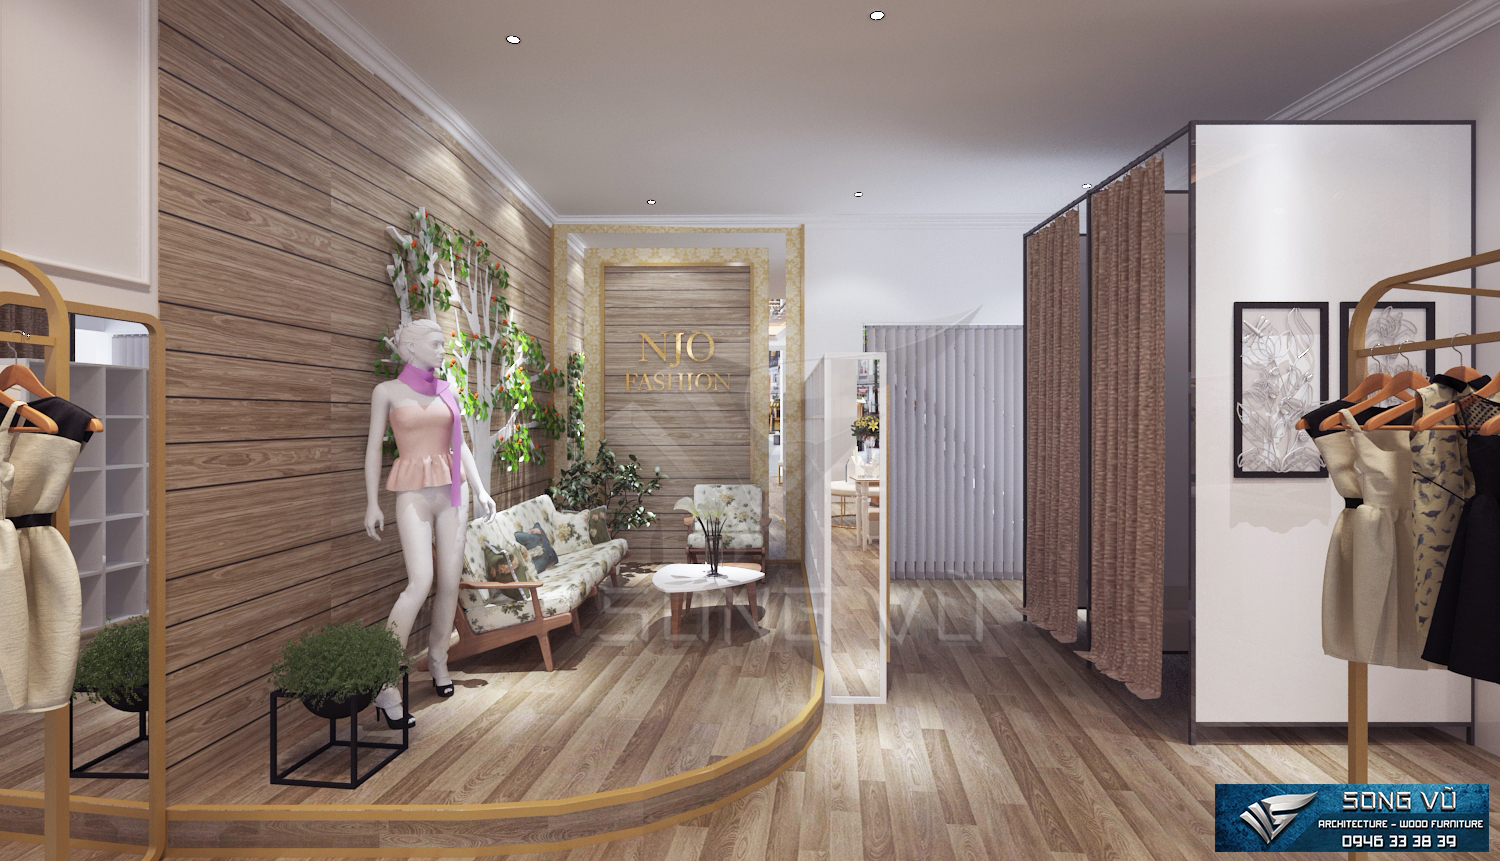 Không gian tiện nghi đơn gián có nội thất Song Vũ bằng gỗ chất lượng phù hợp mọi không gian